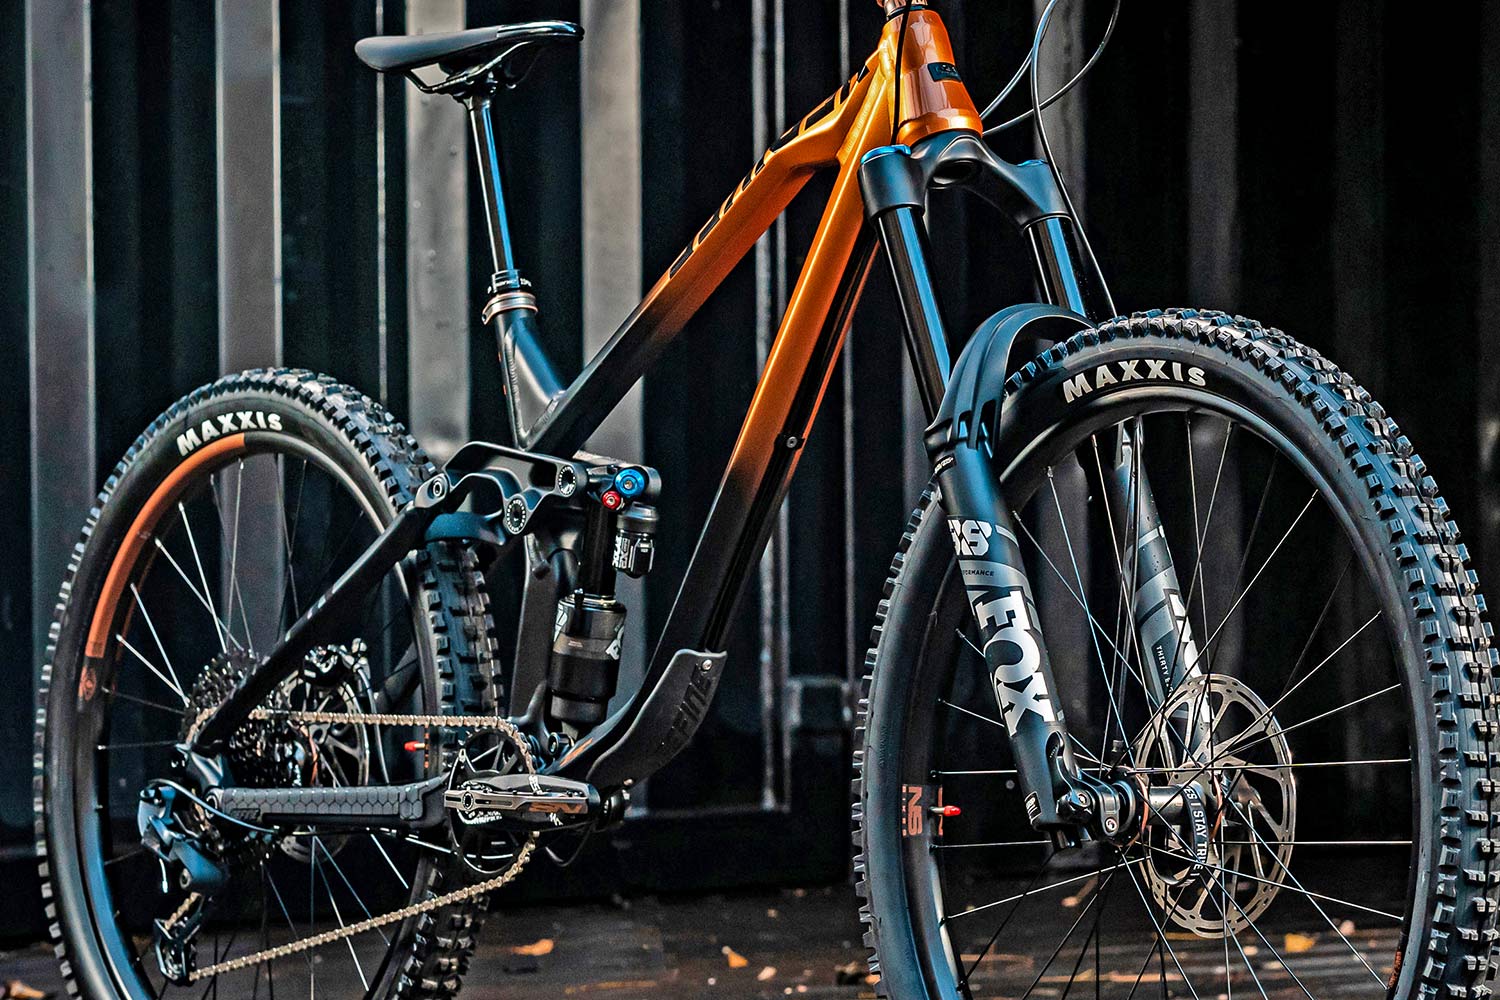 NS Bikes Define AL 170 long-travel mullet enduro plus all-mountain bike, photo by Piotr Jurczak, frame detail